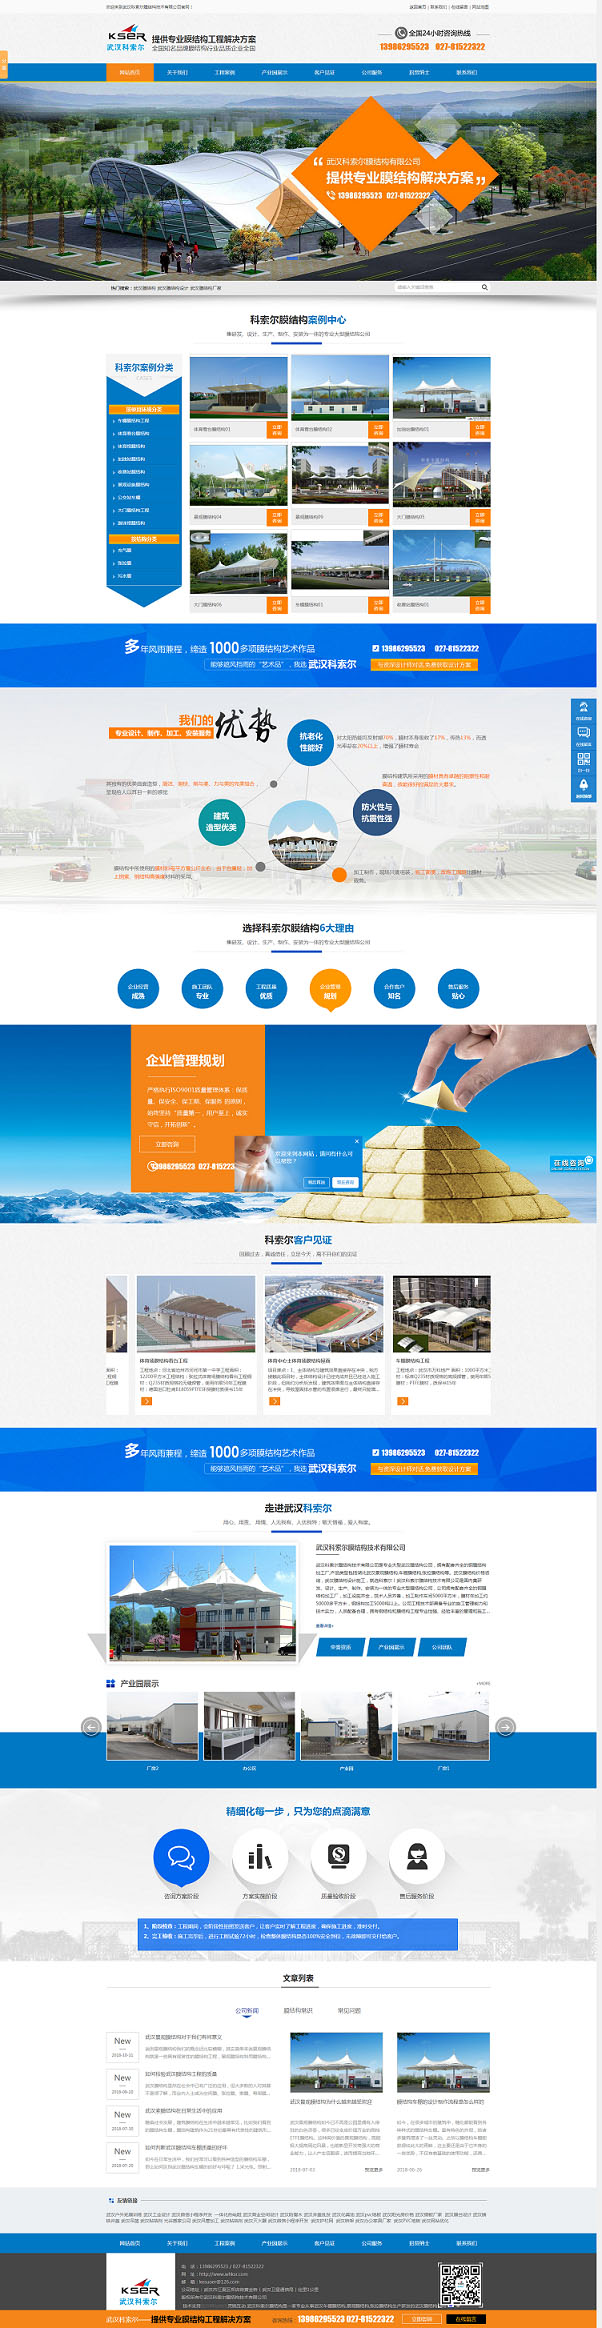 武汉科索尔膜结构技术有限公司网站建设及优化